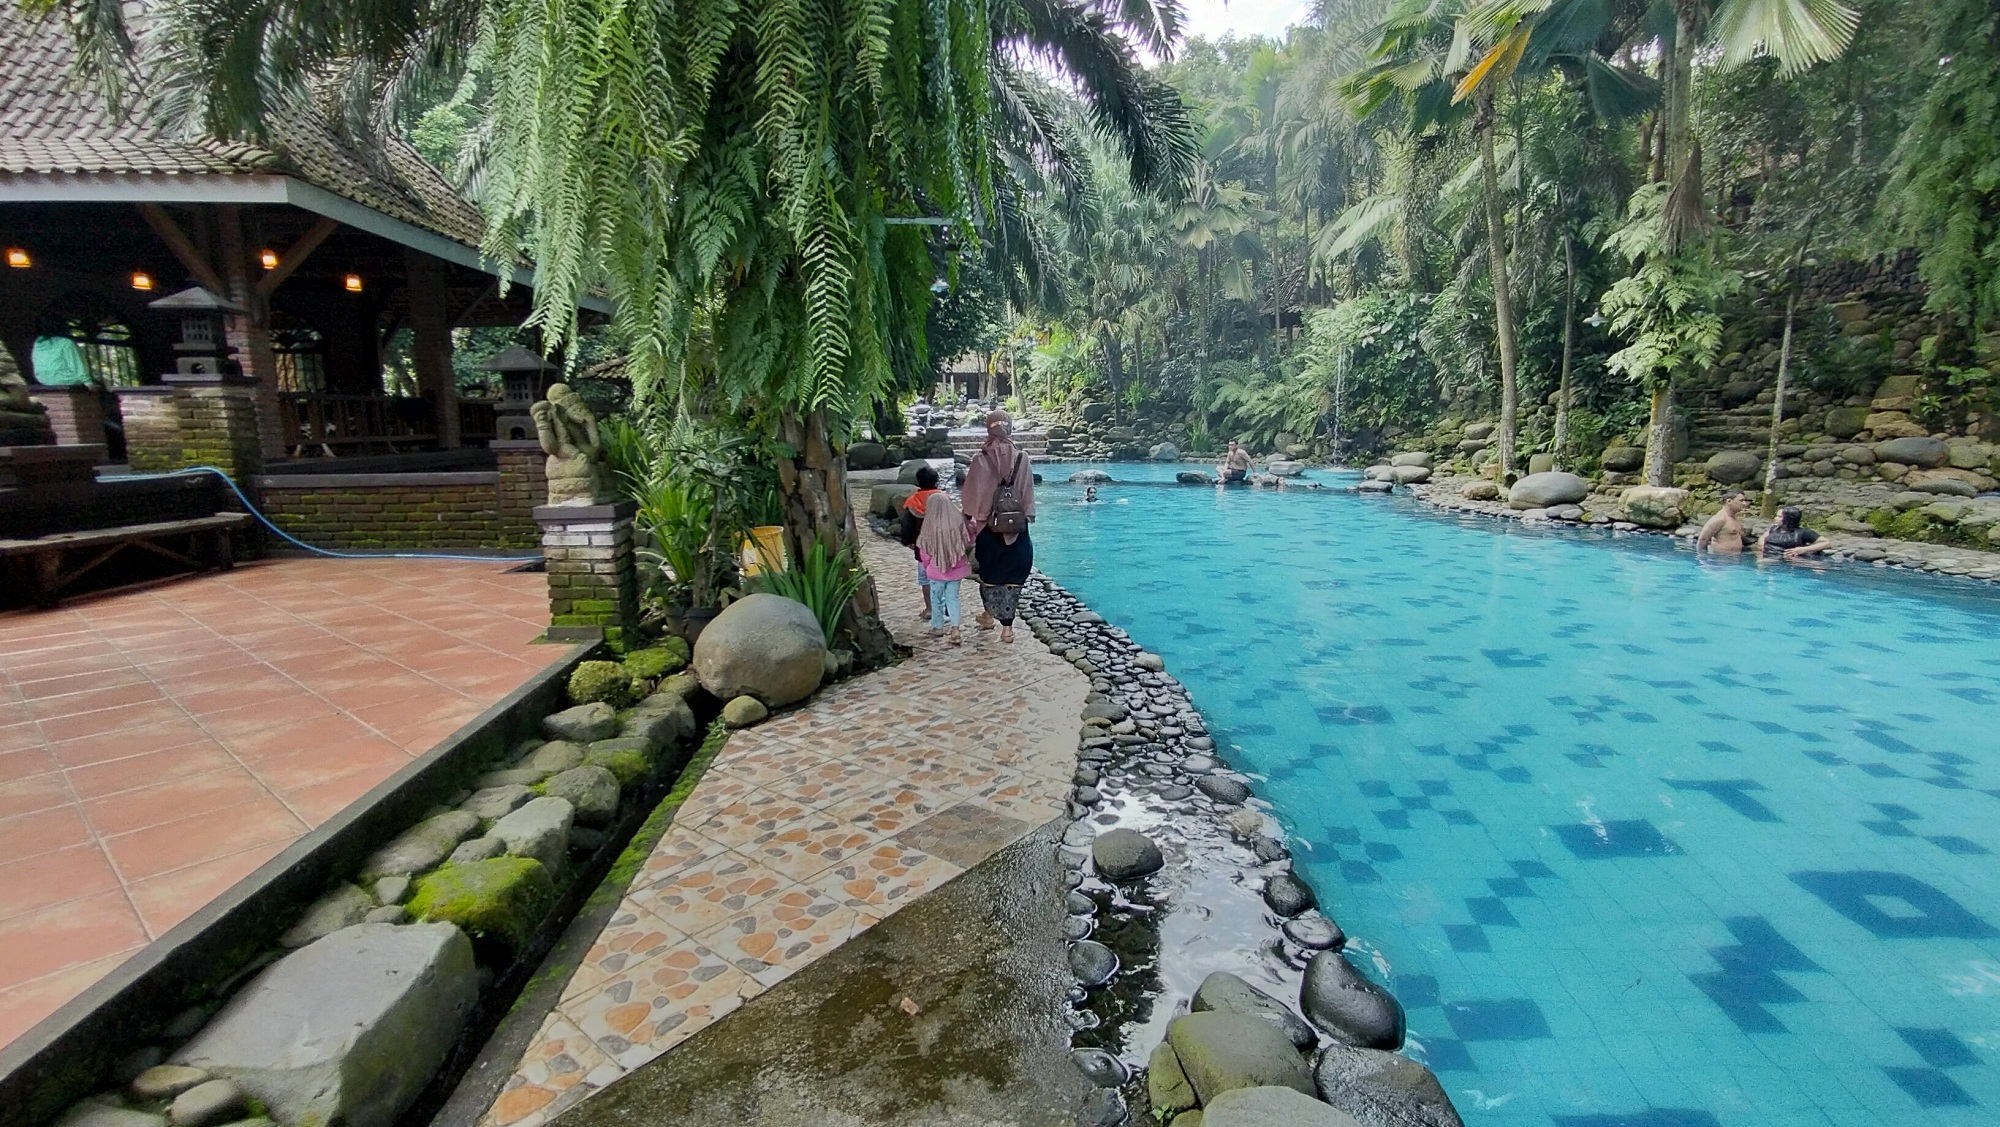 Watu Gunung merupakan wisata pemandian yang kental dengan nuansa tradisional Jawa